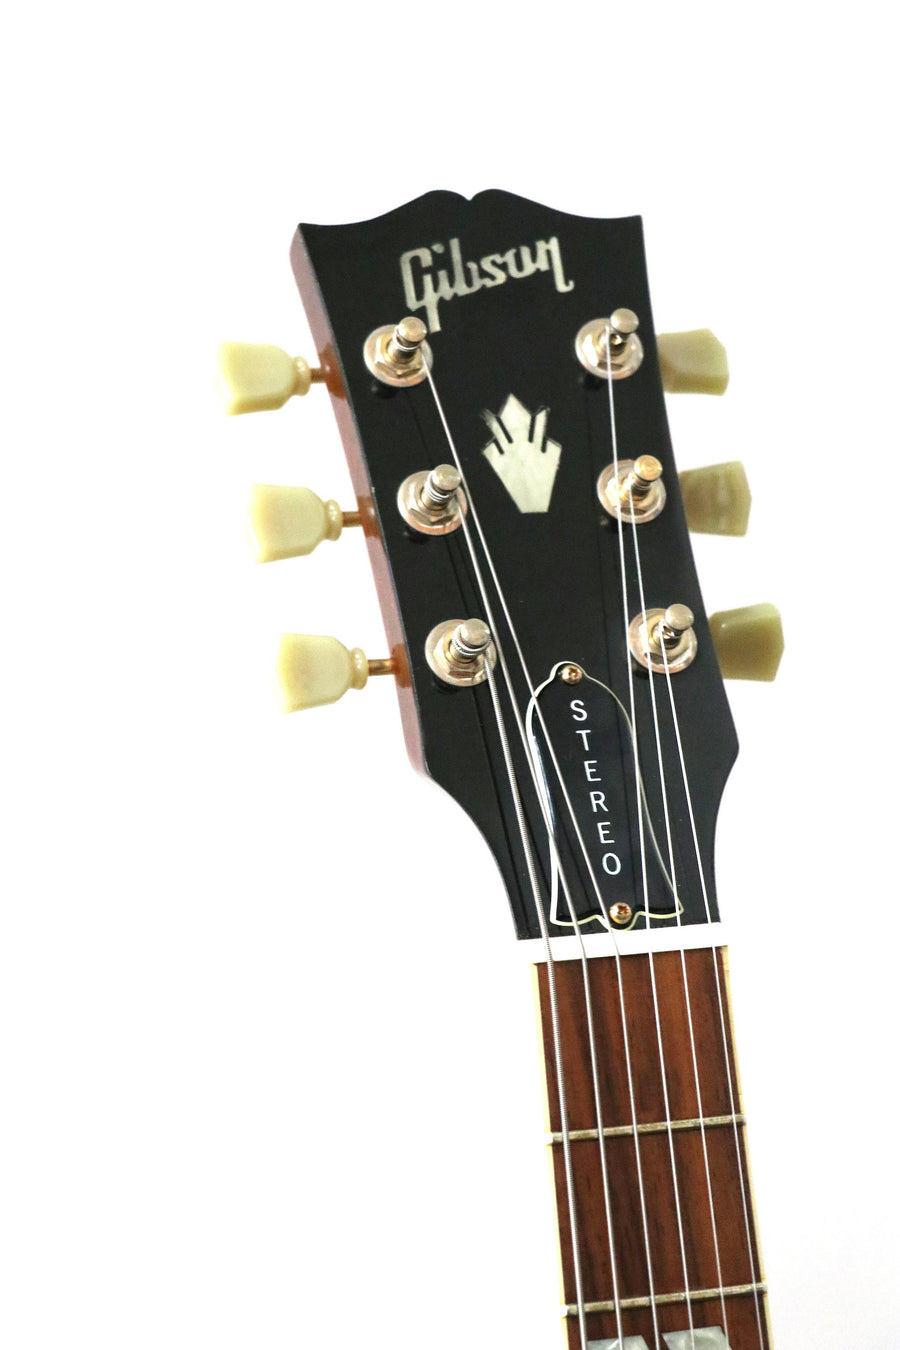 Gibson ES345 USA 2006